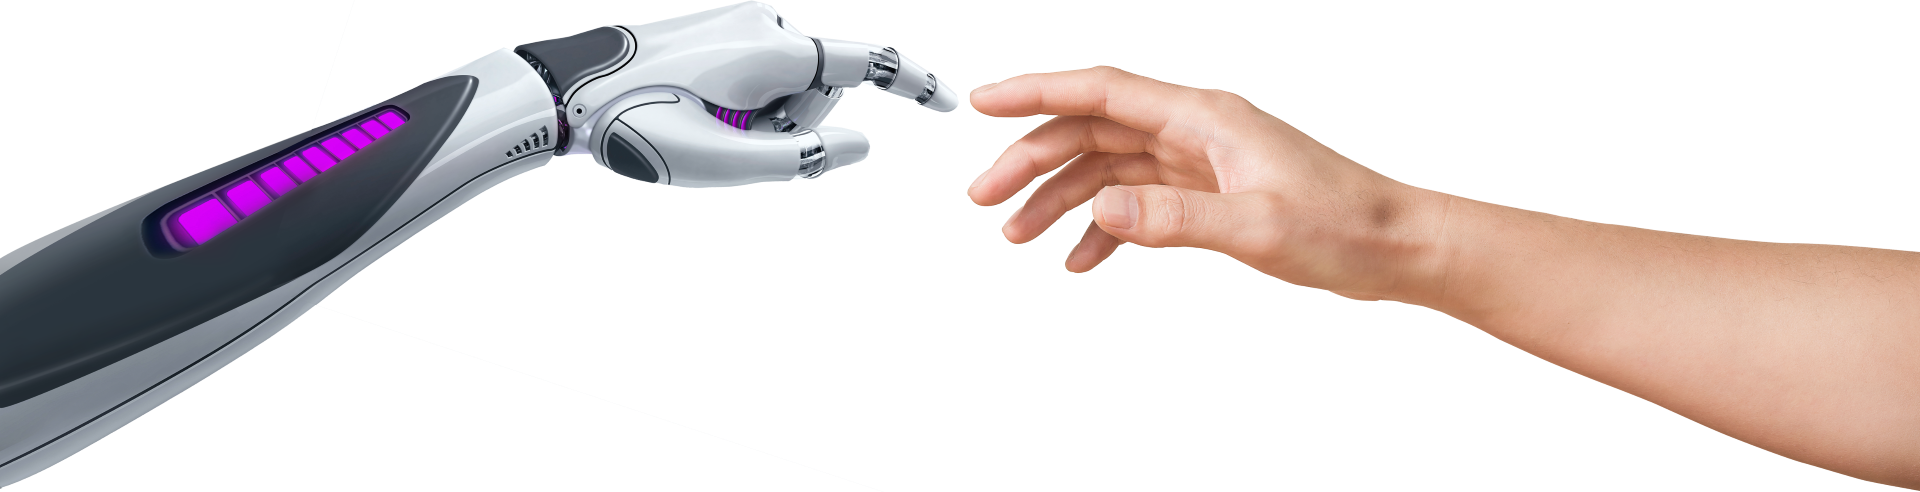 Eine Roboterhand und eine menschliche Hand, die sich einander nähern und fast berühren